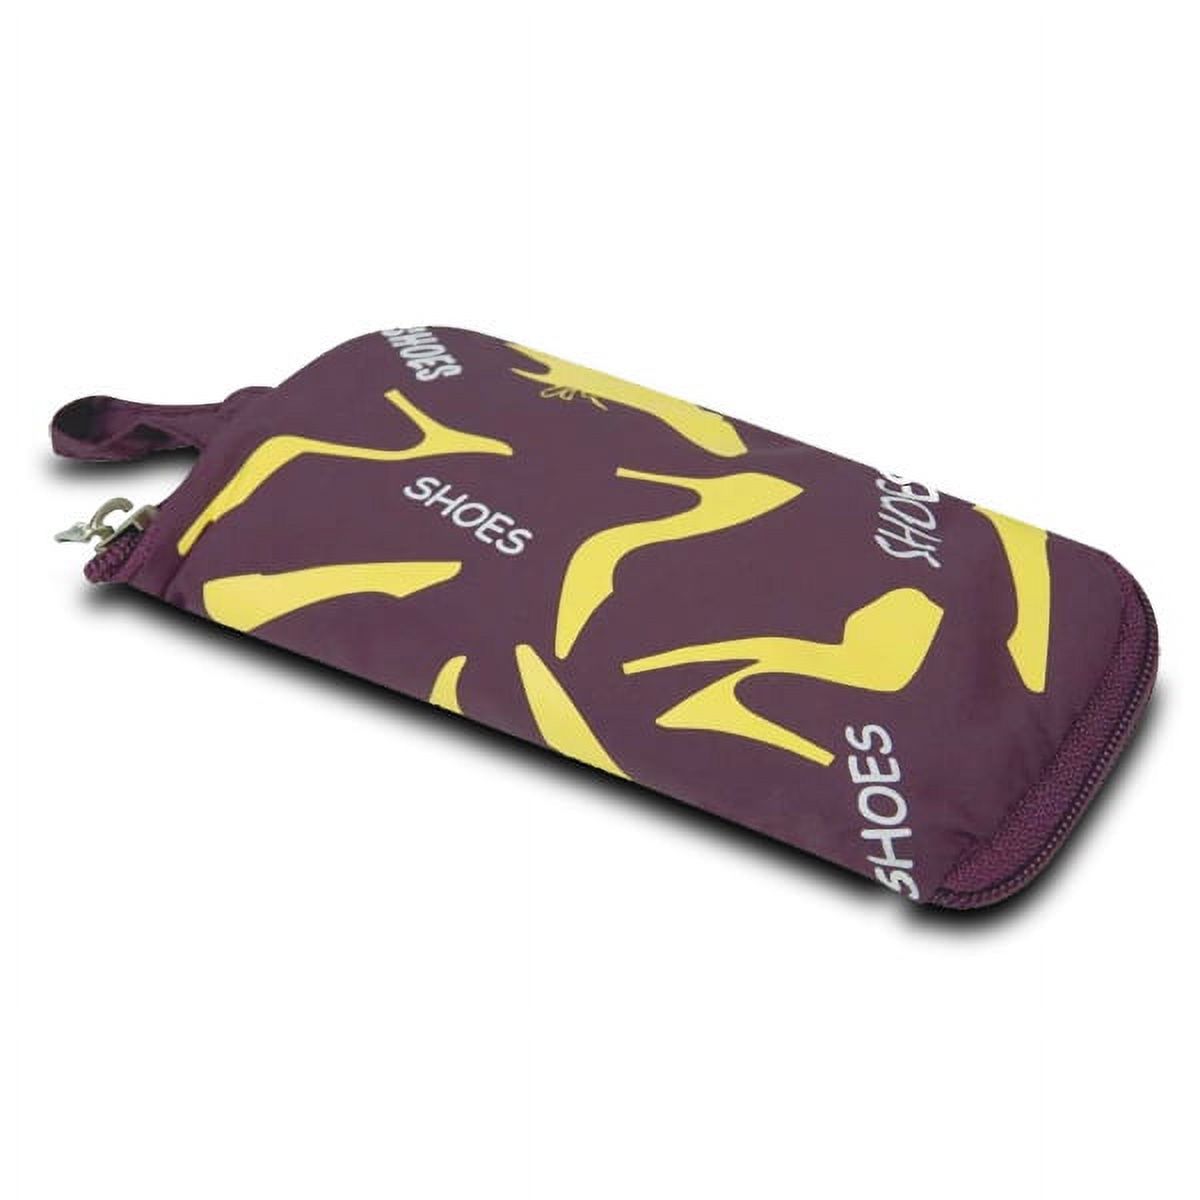 Pocket Packs Shoe Bag - Purple - image 4 of 4